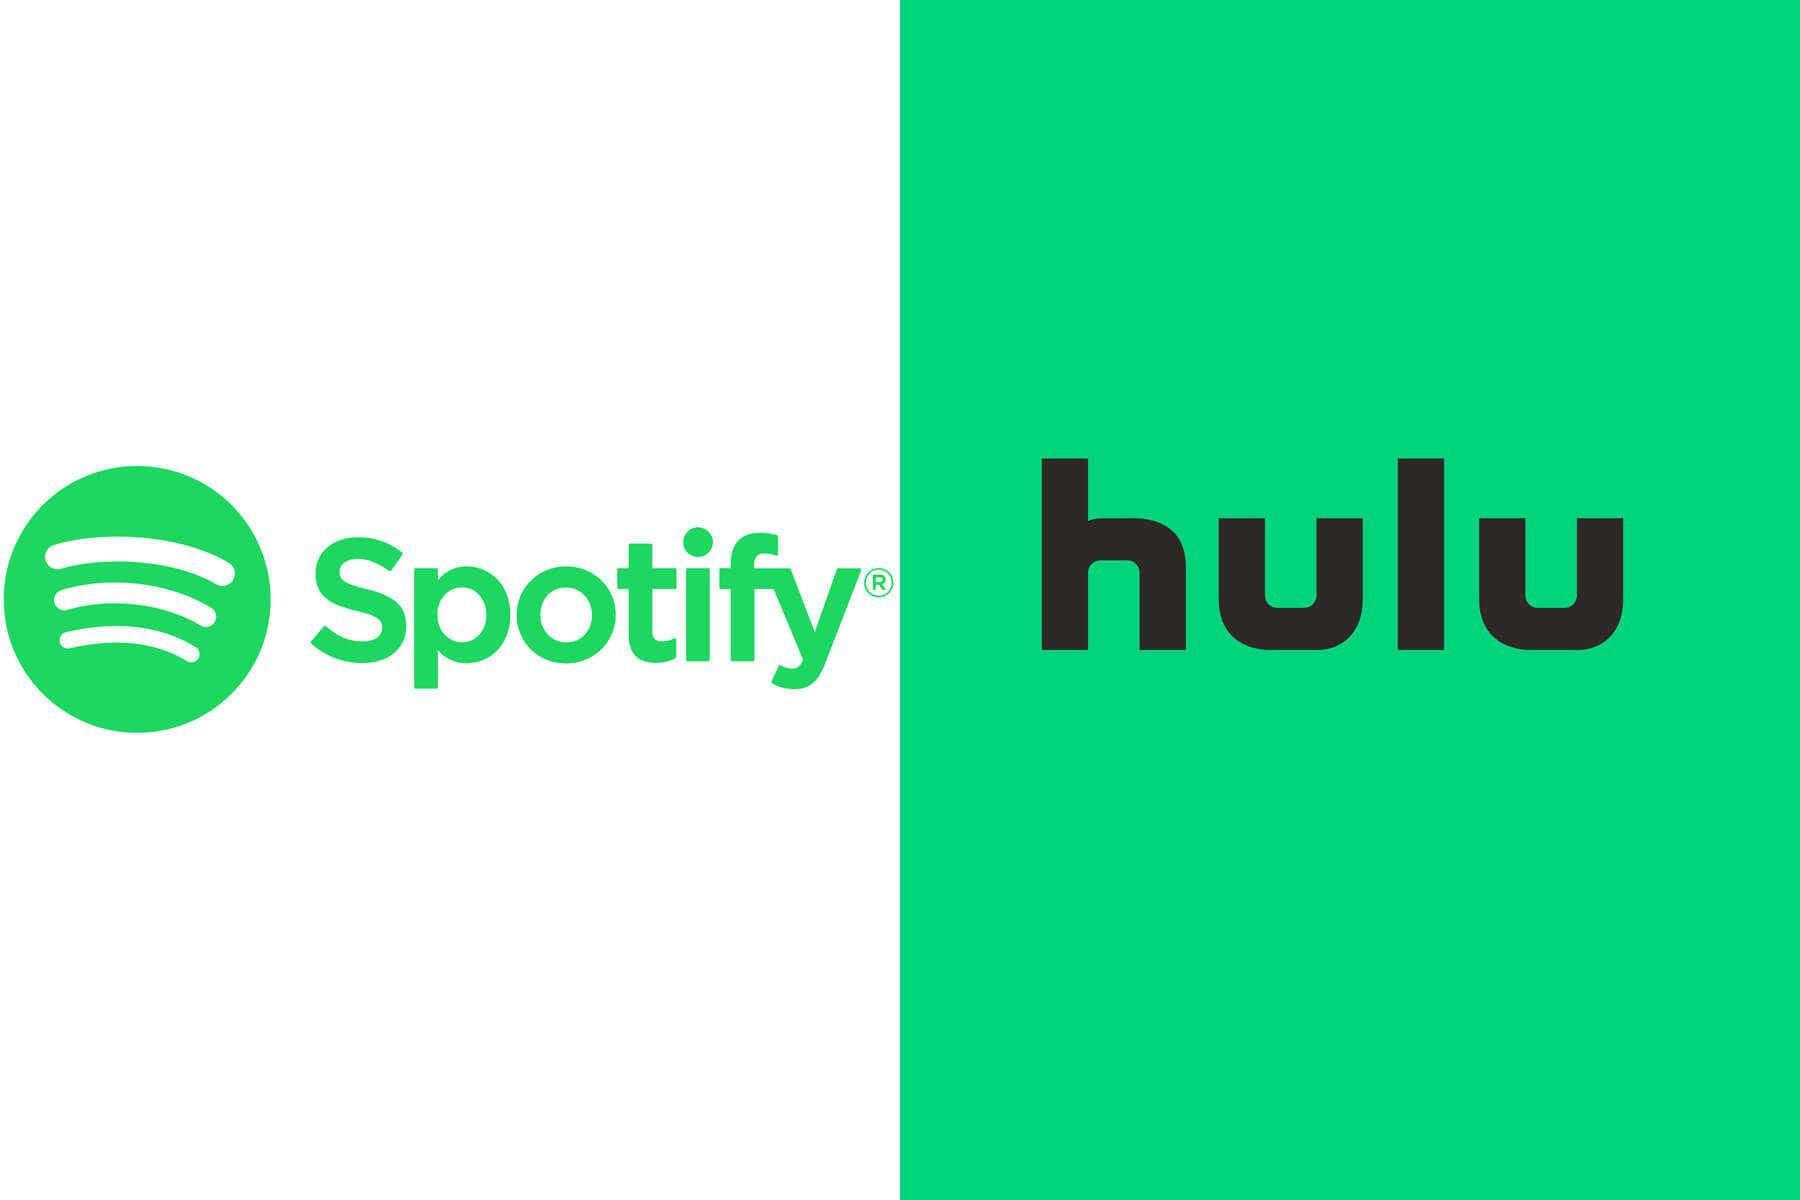 spotify and hulu bundle